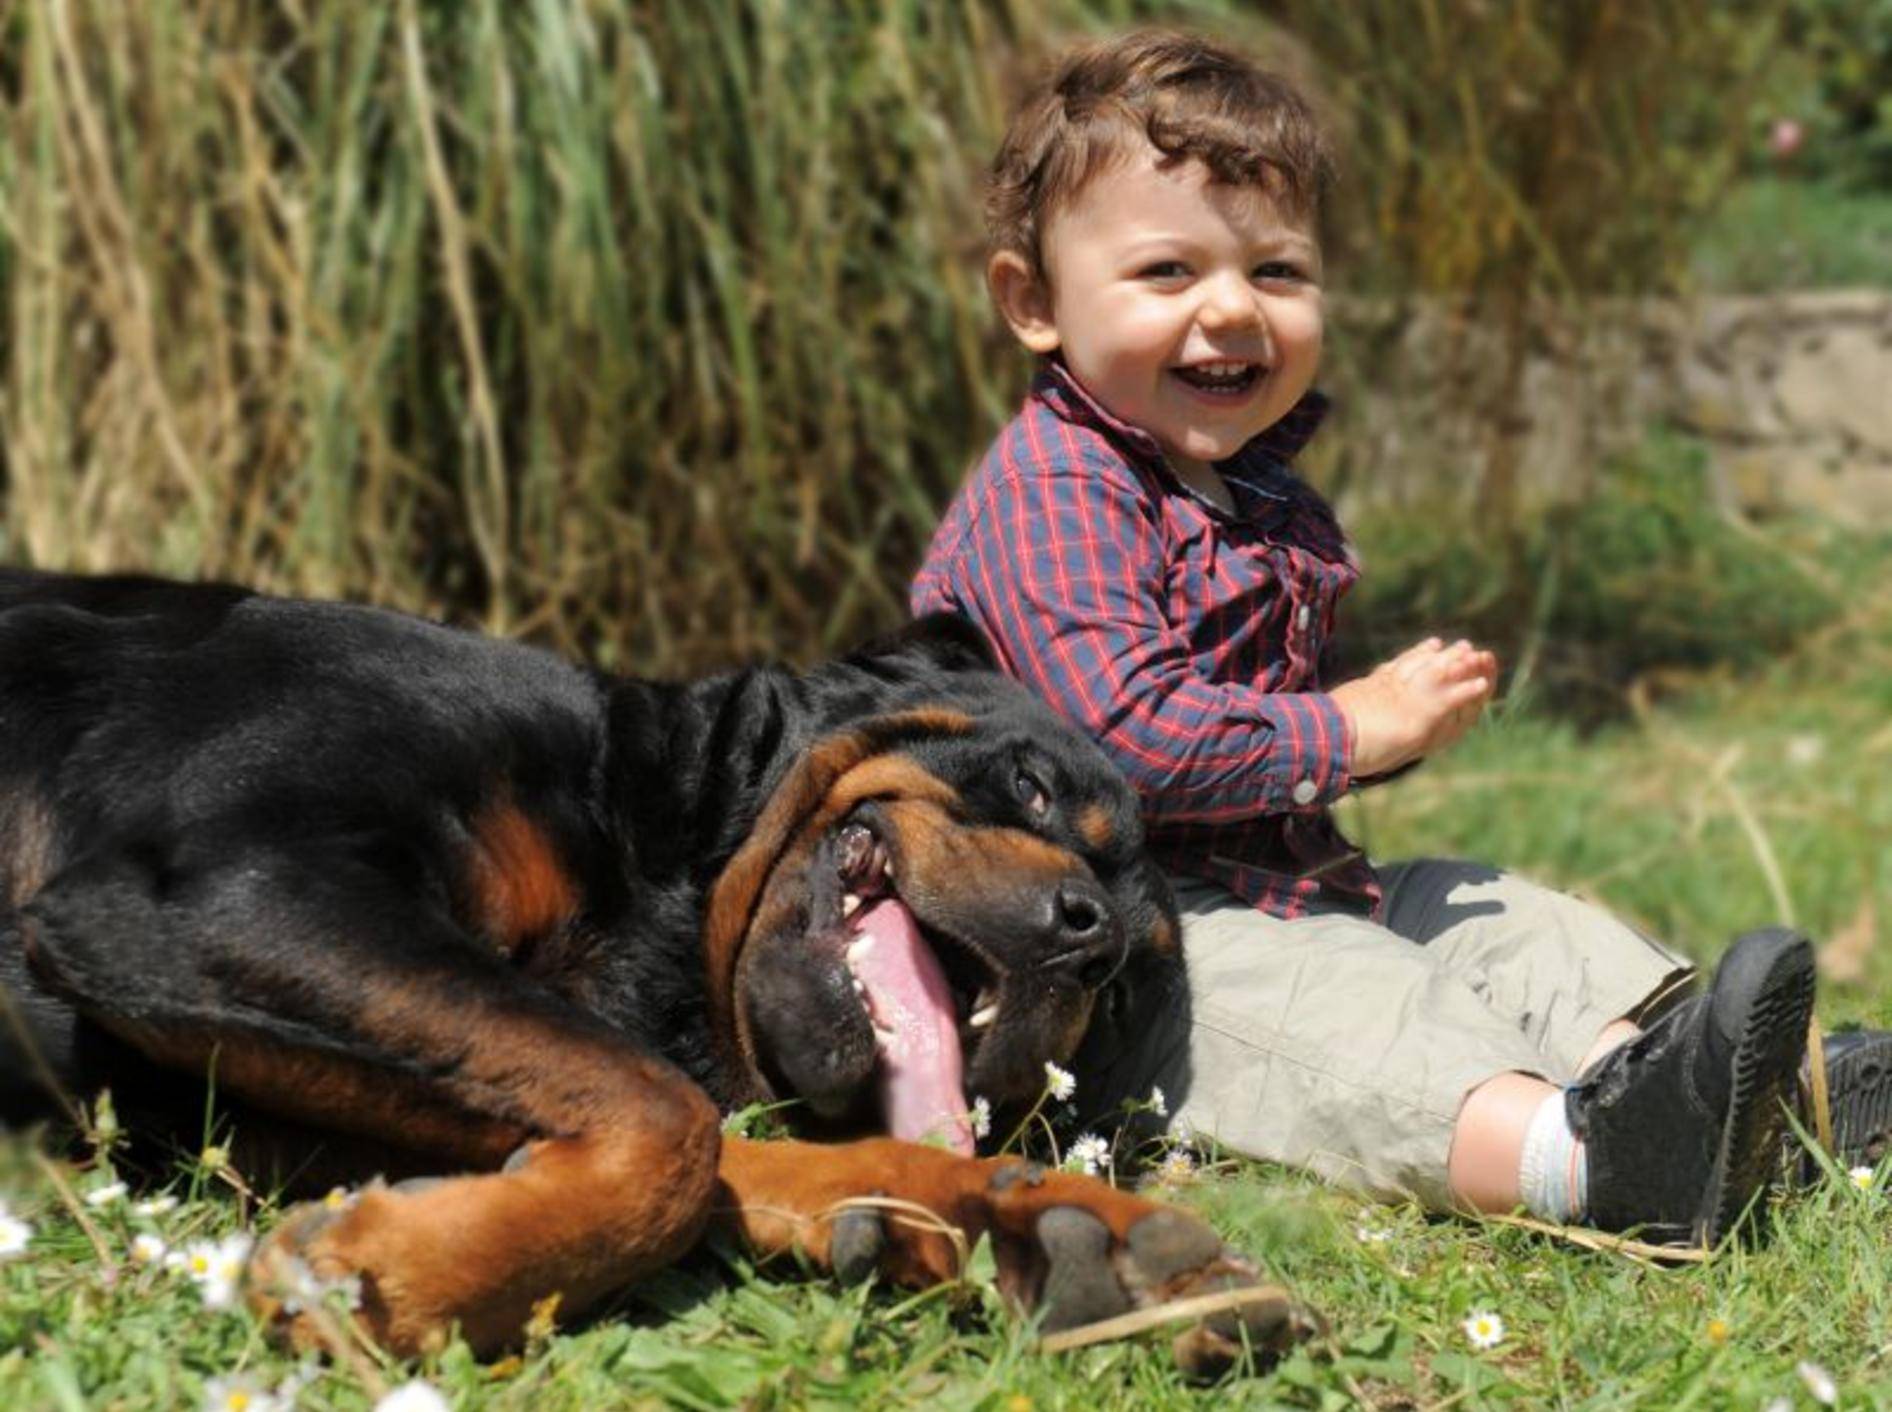 Eindeutig: Hunde und Kinder genießen das schöne Wetter am liebsten zu zweit — Bild: Shutterstock / cynoclub